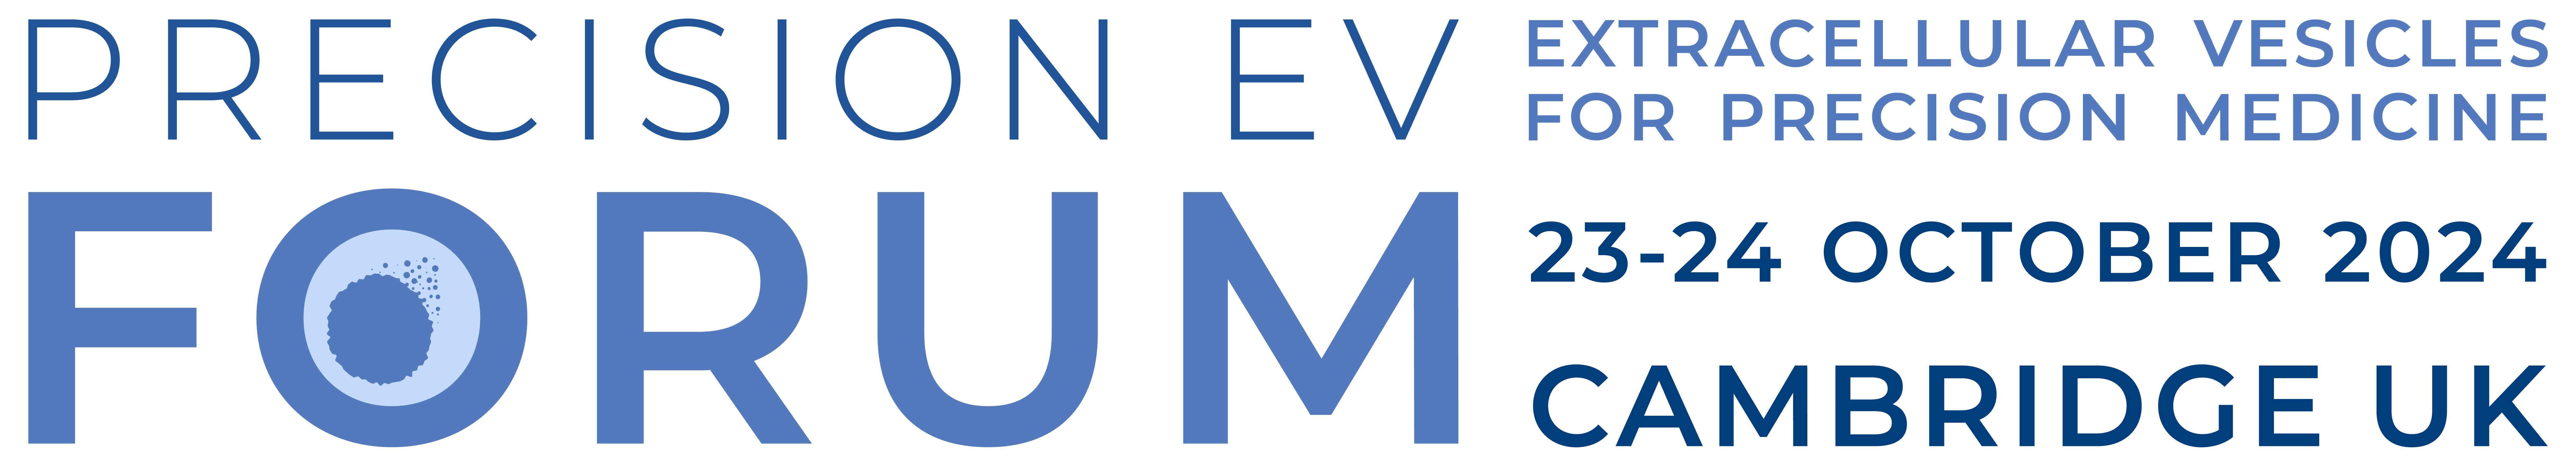 PRECISION EV FORUM 2024 logo